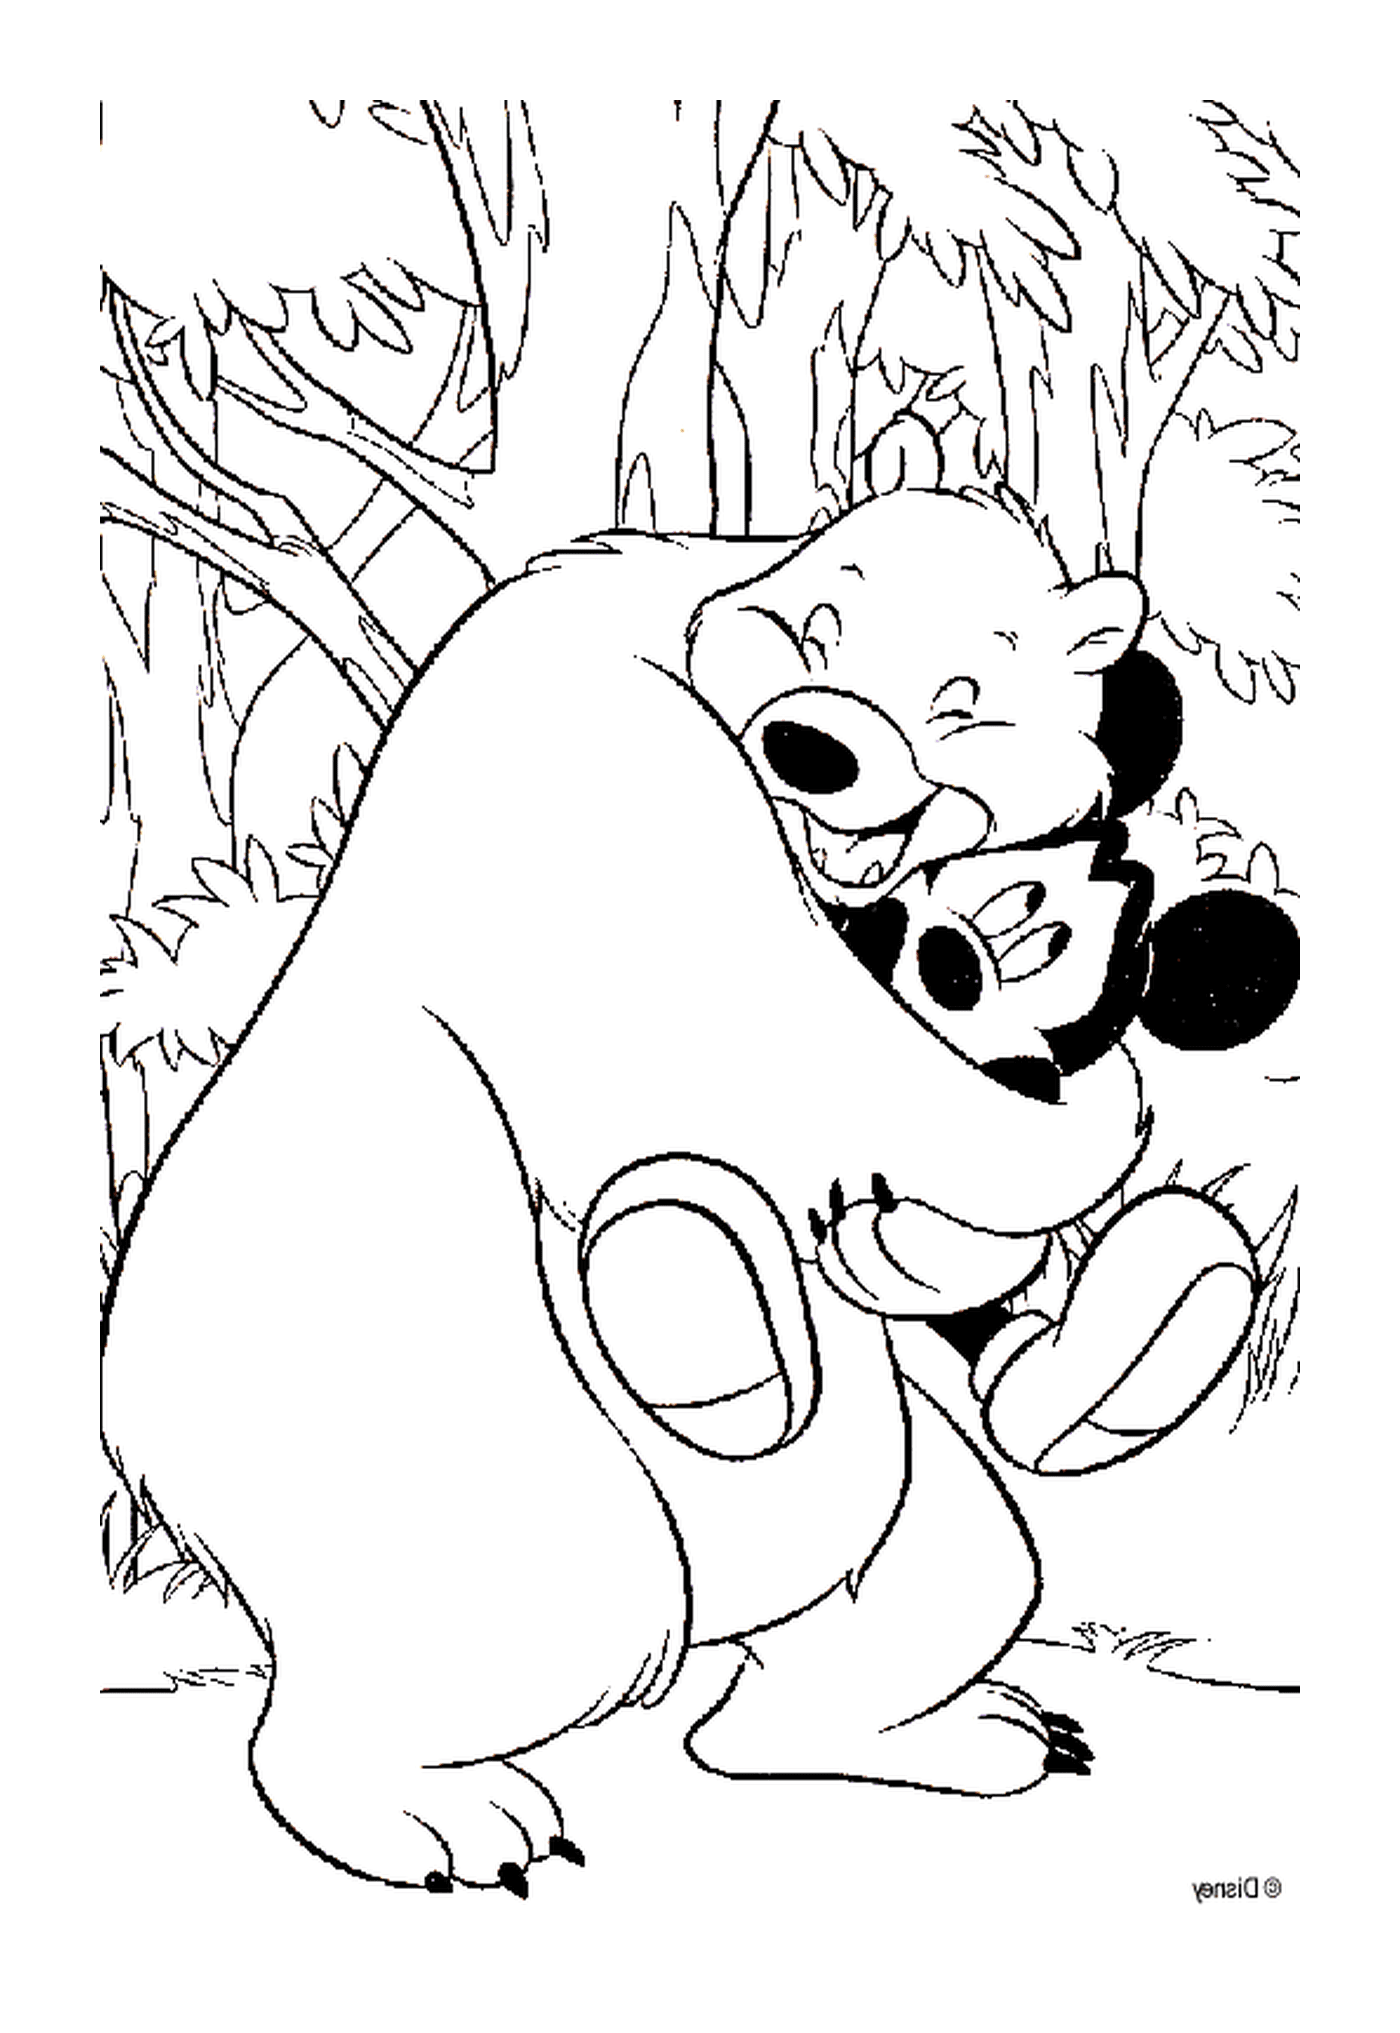  咪咪与可爱的熊: 抱抱熊咪咪老鼠 